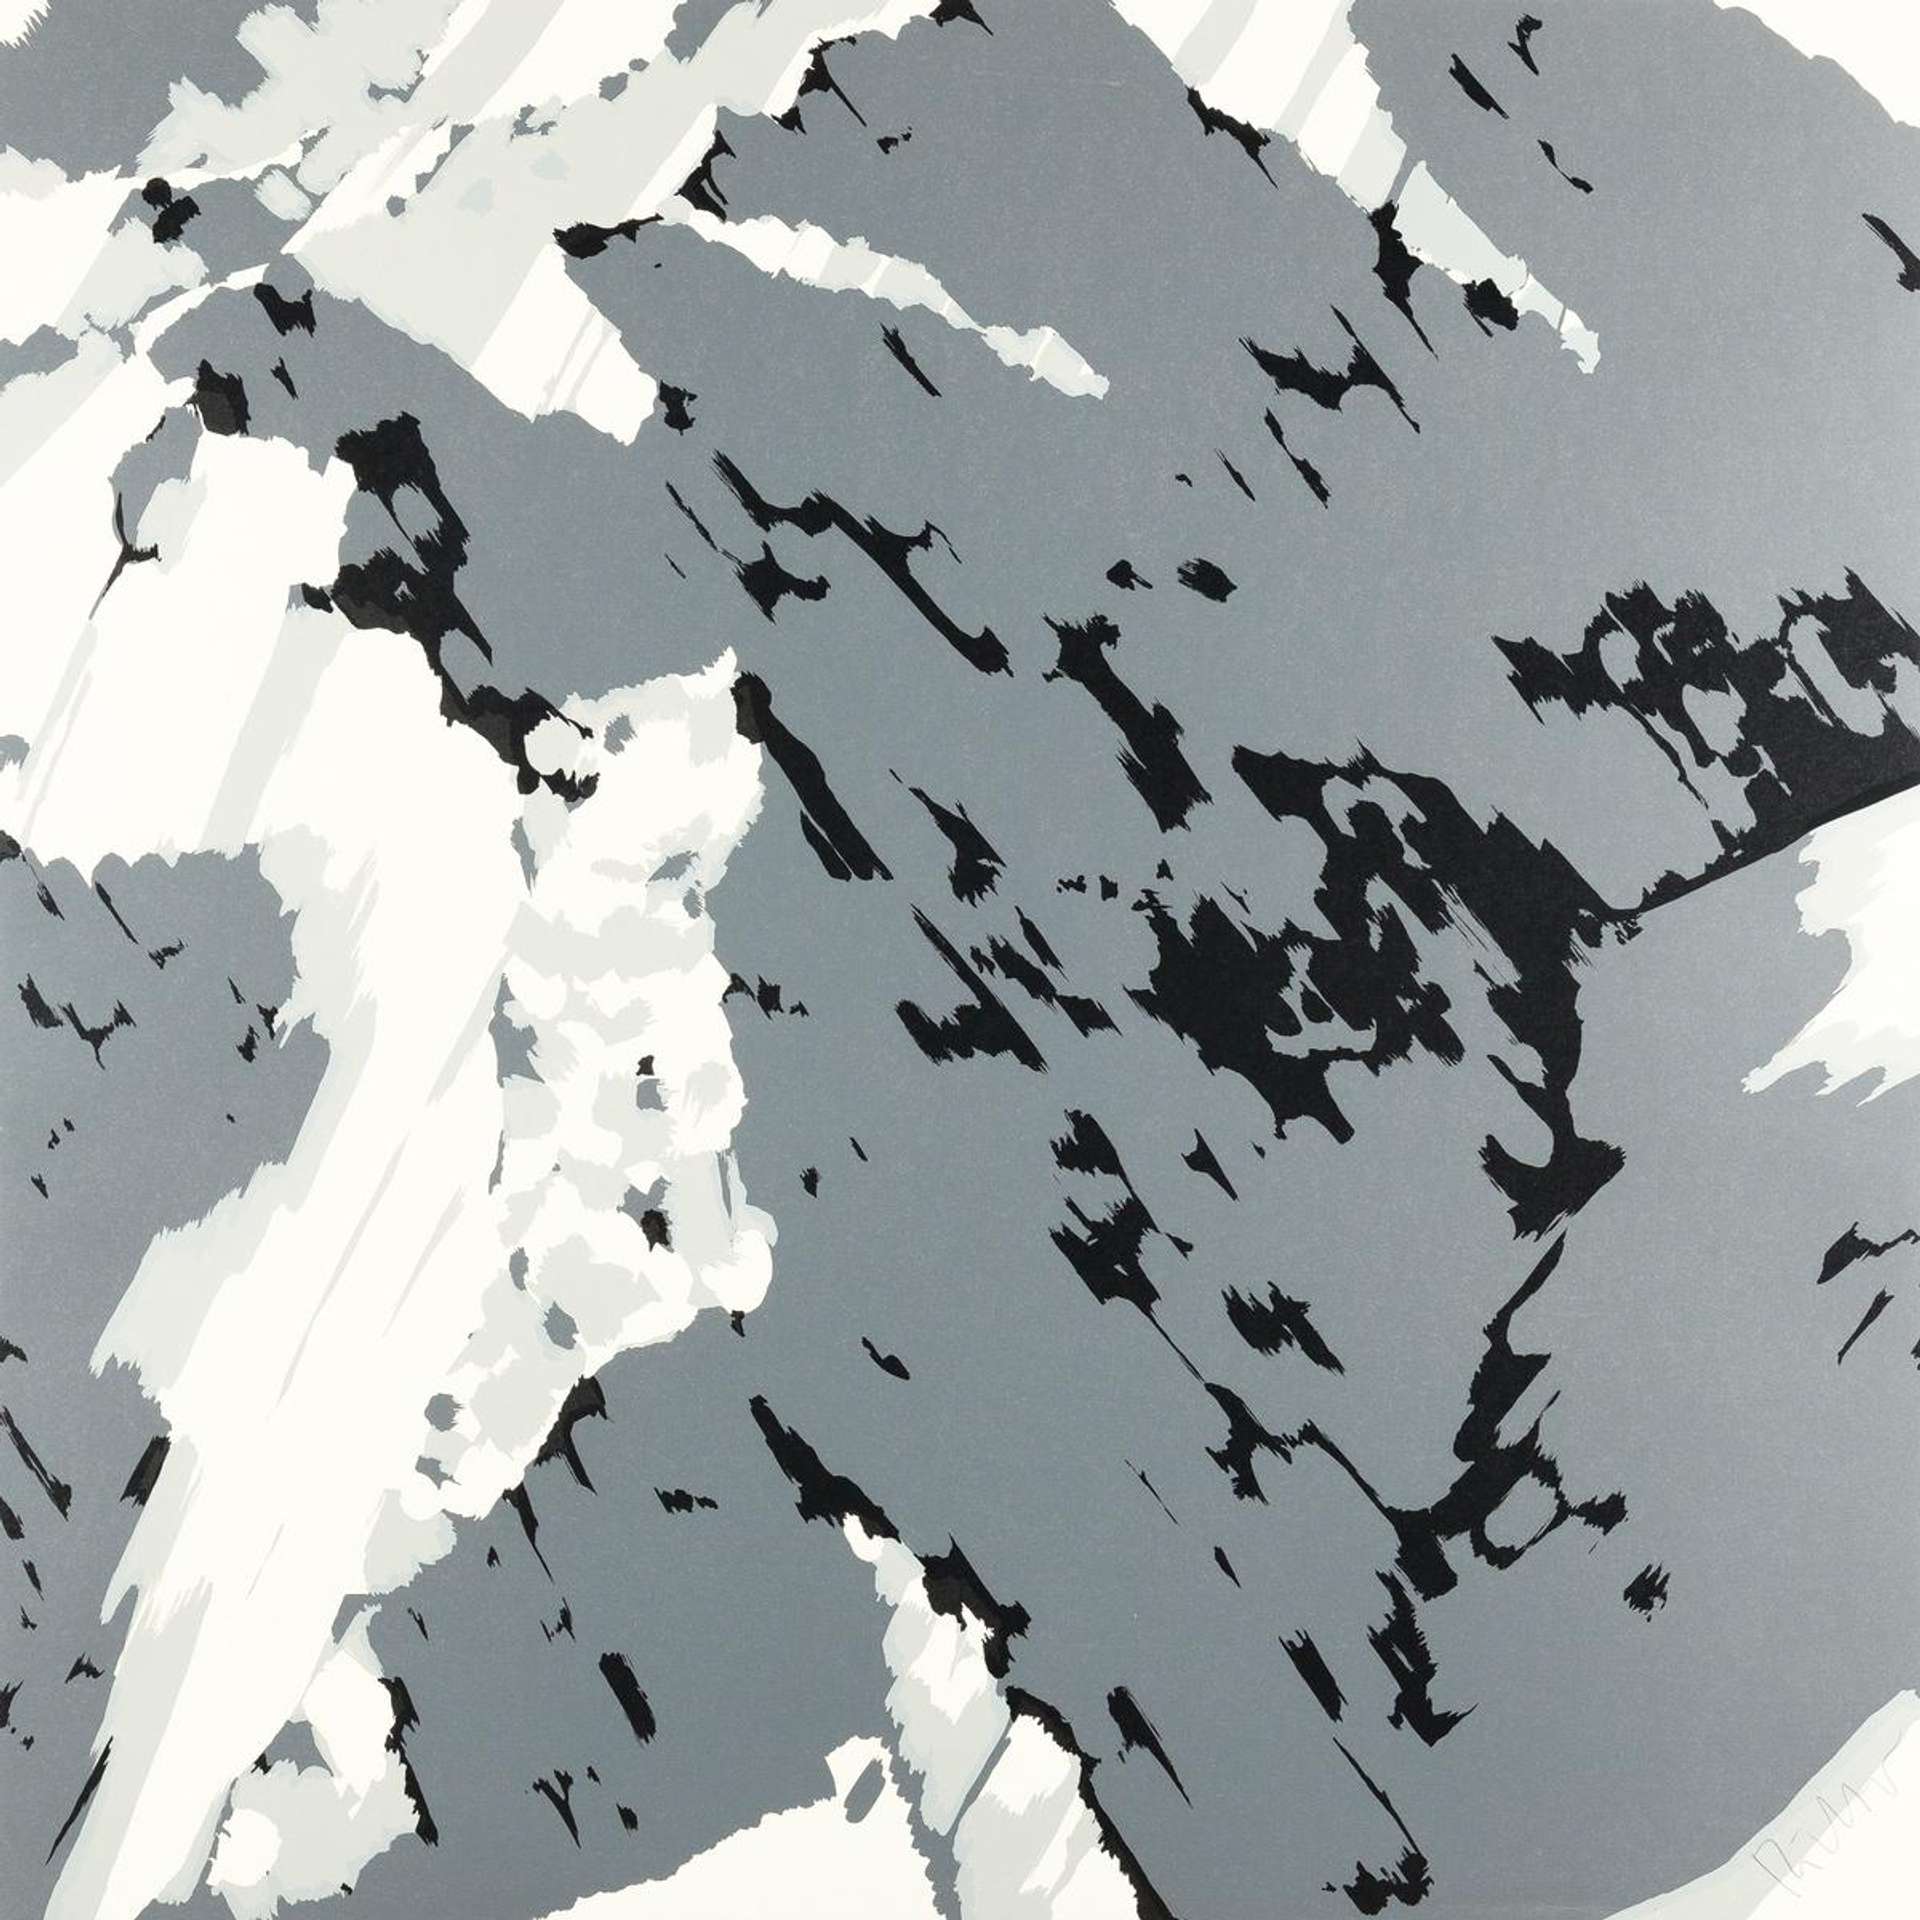 Gerhard Richter: Schweizer Alpen II - A1 - Signed Print